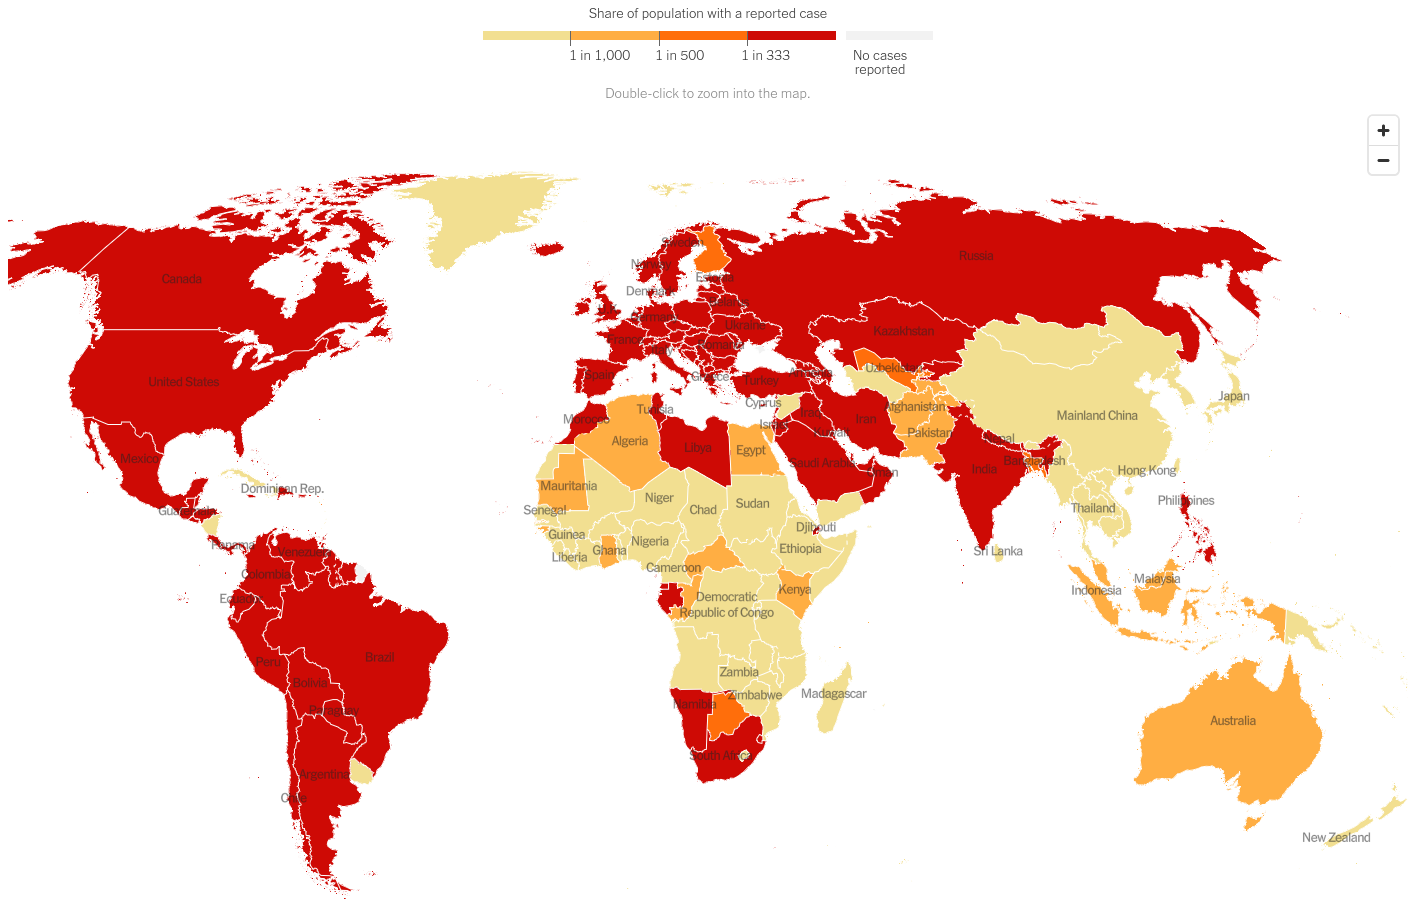 per capita world cases